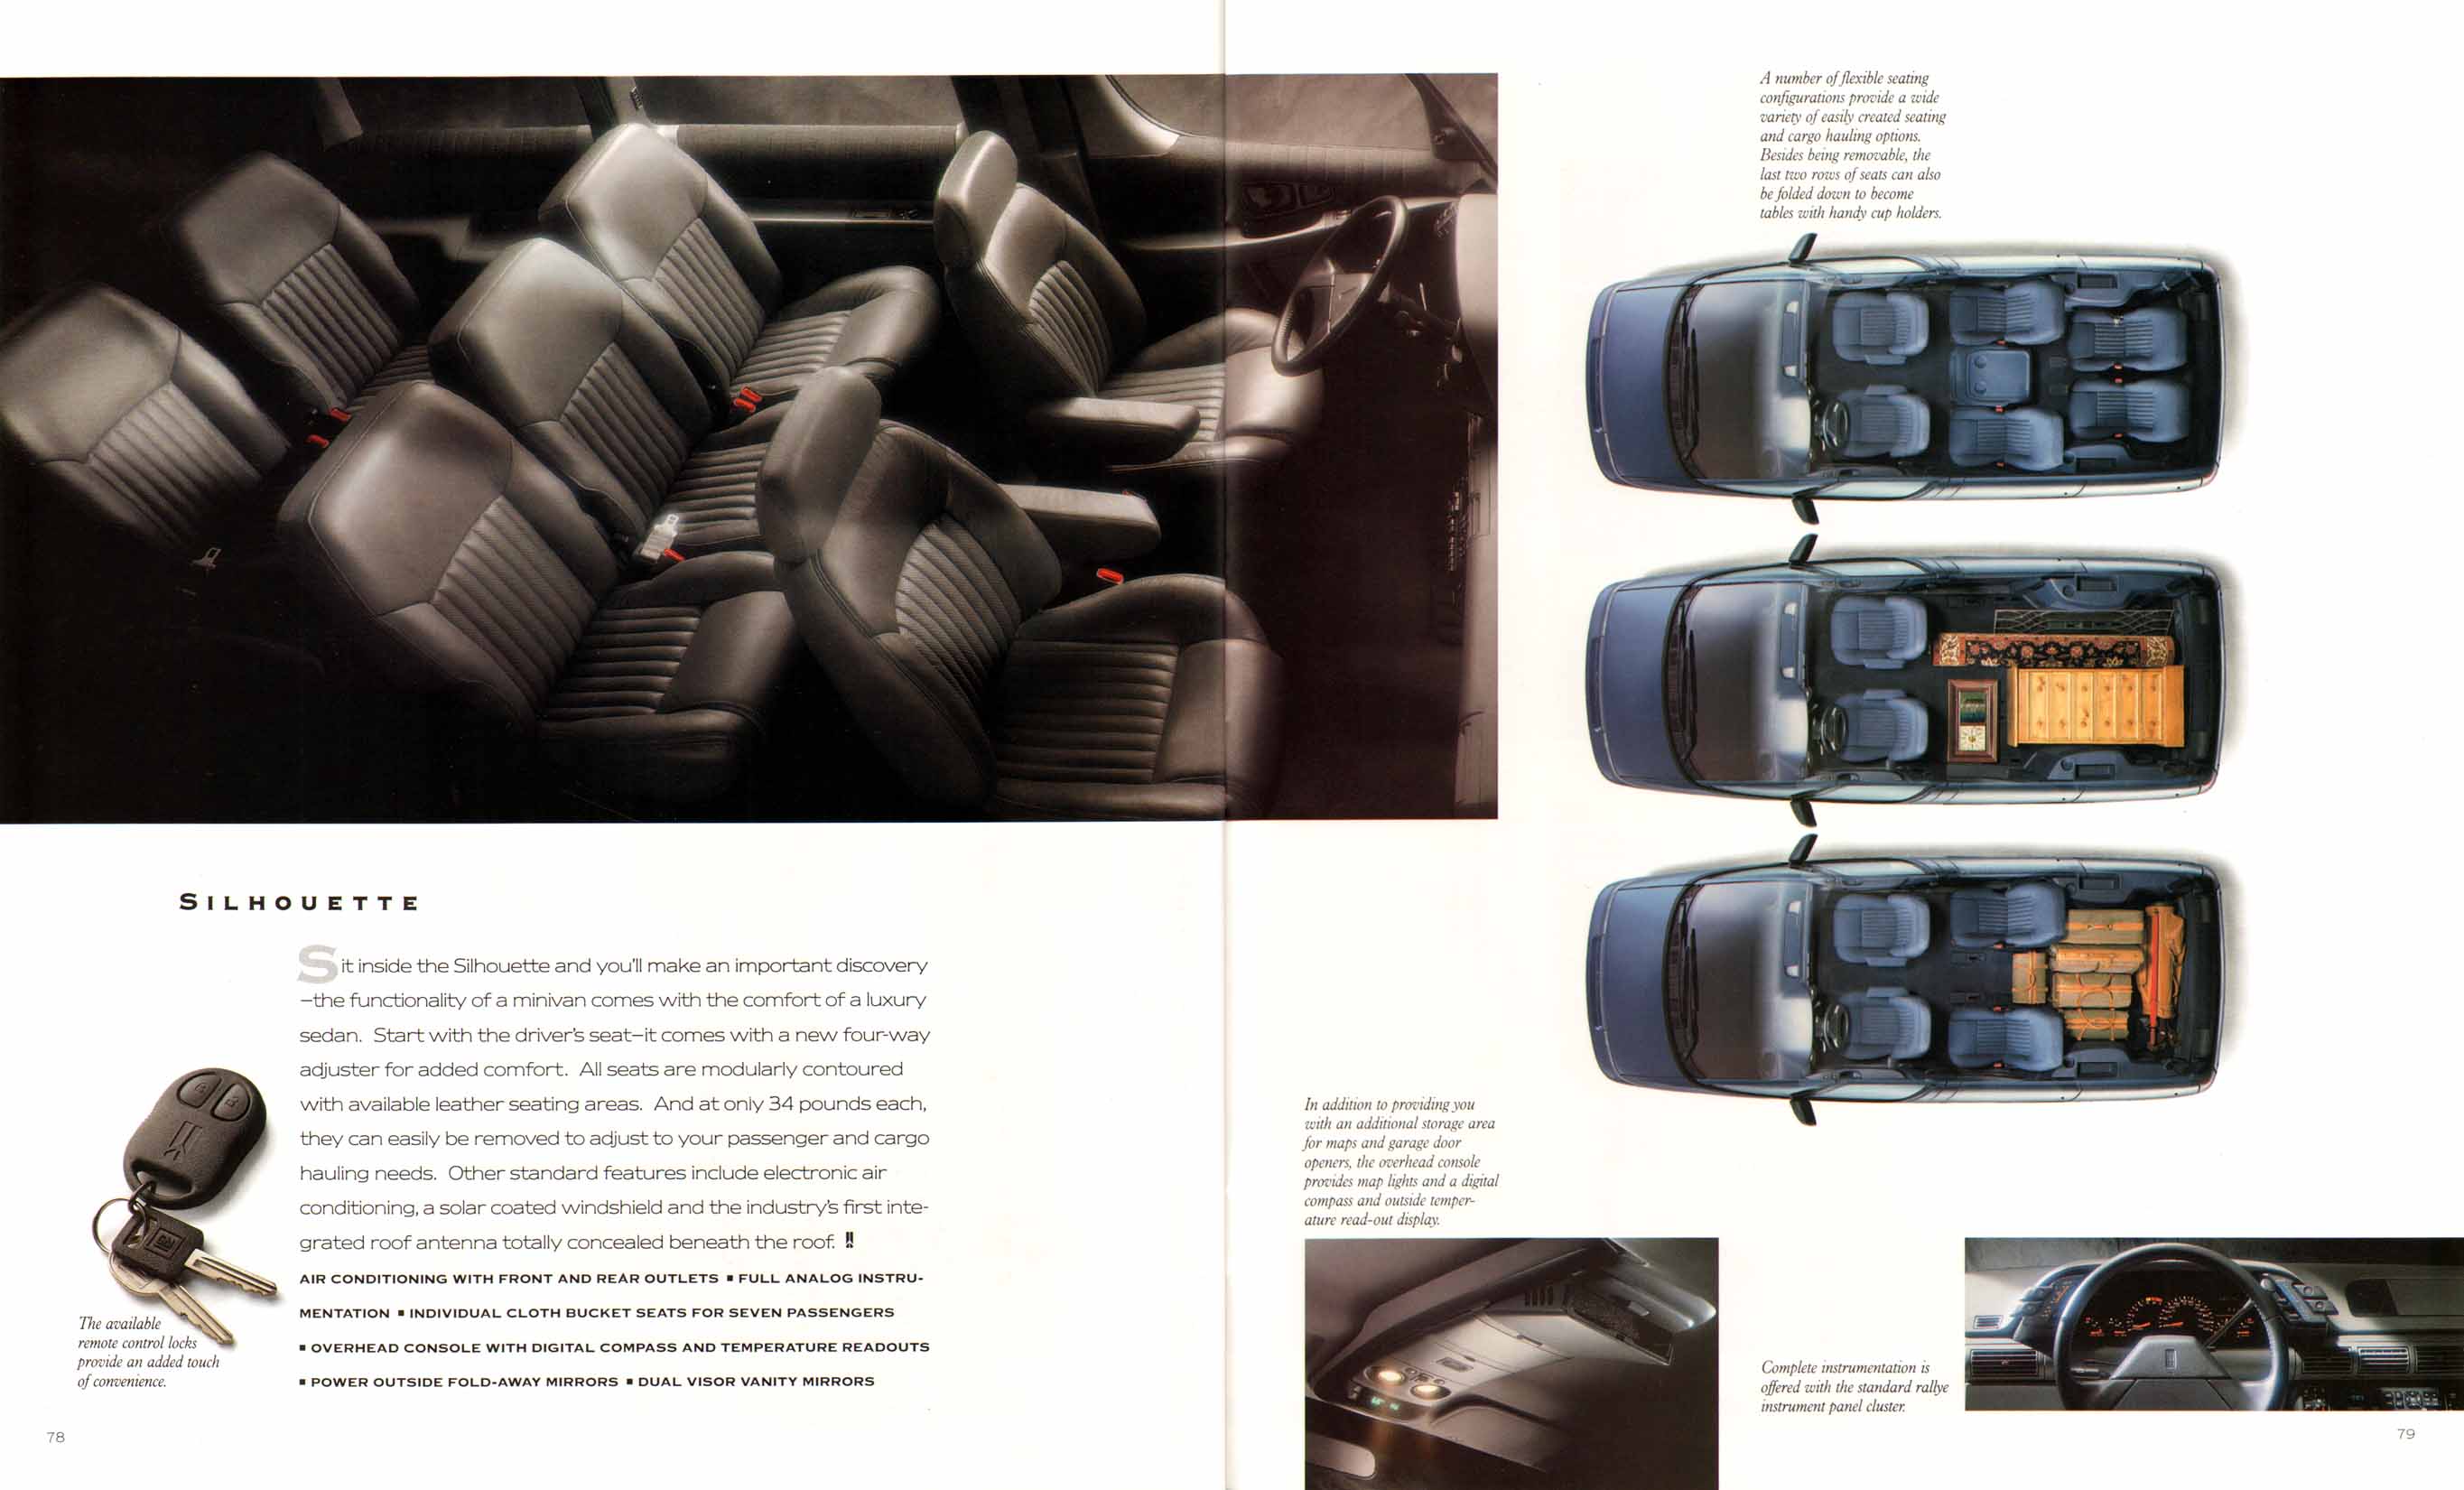 1992_Oldsmobile_Full_Line_Prestige-78-79